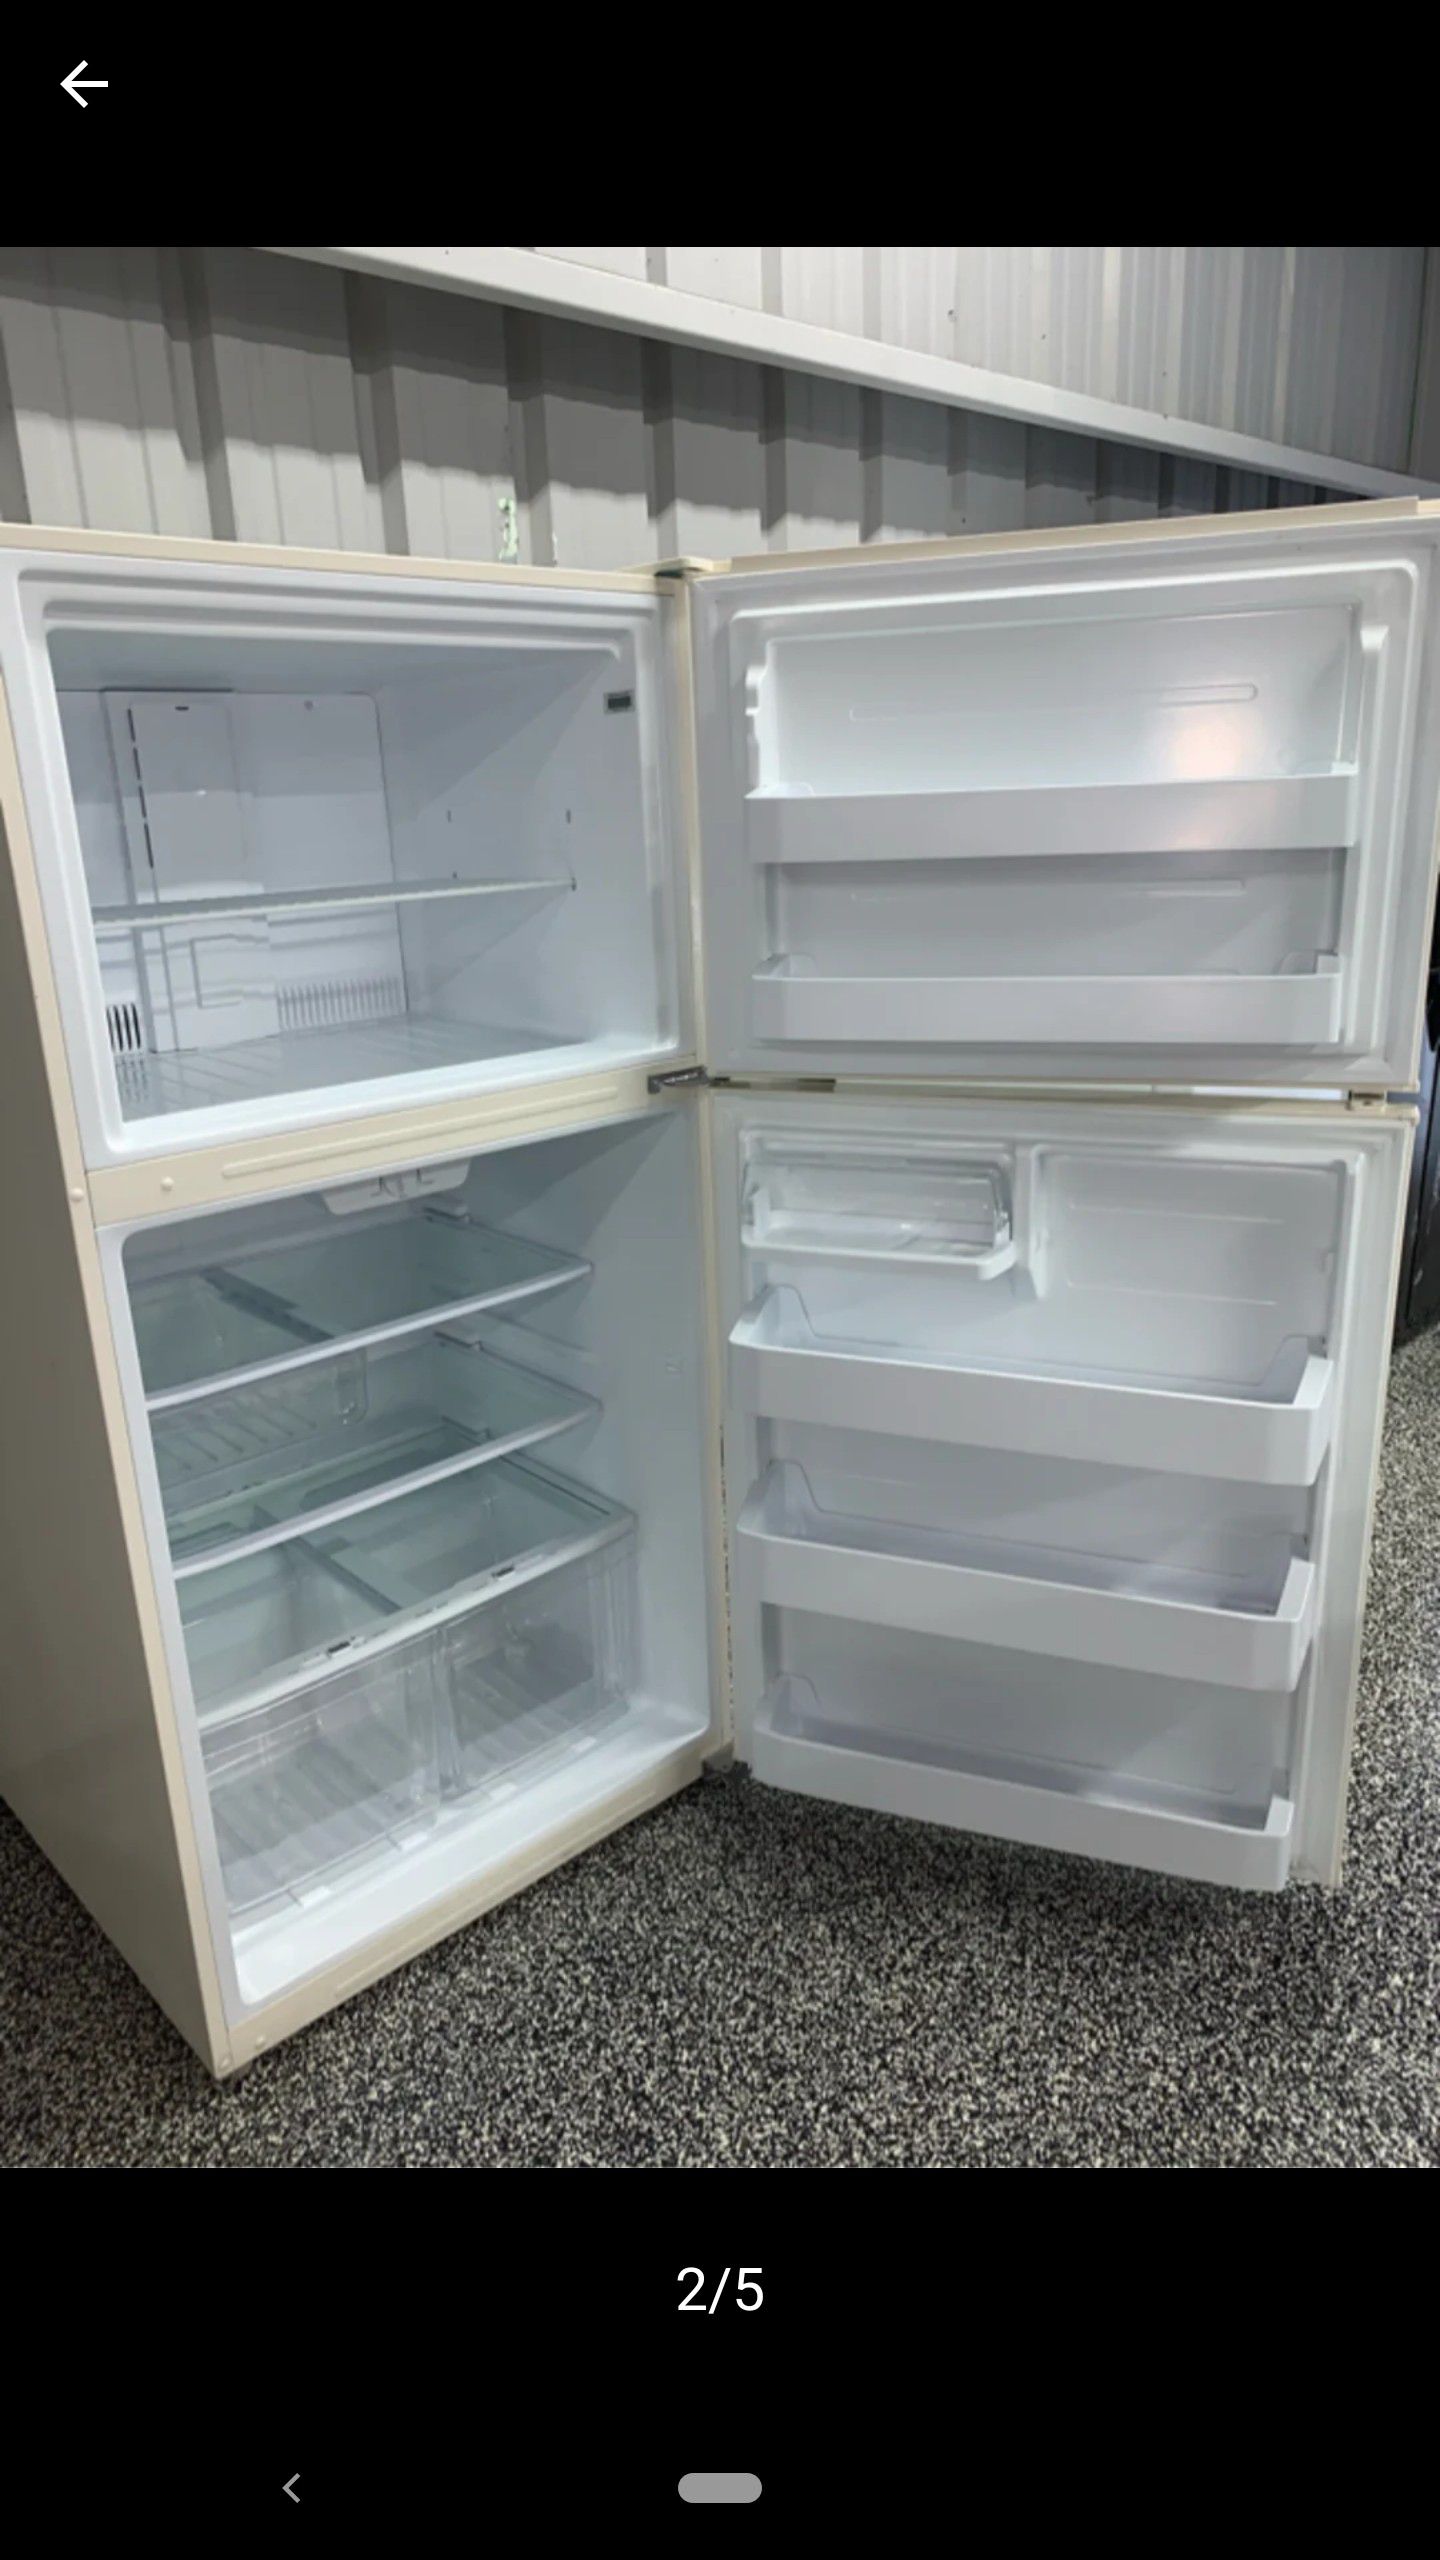 The Frigidaire 18 cu. ft. Top Freezer Refrigerator